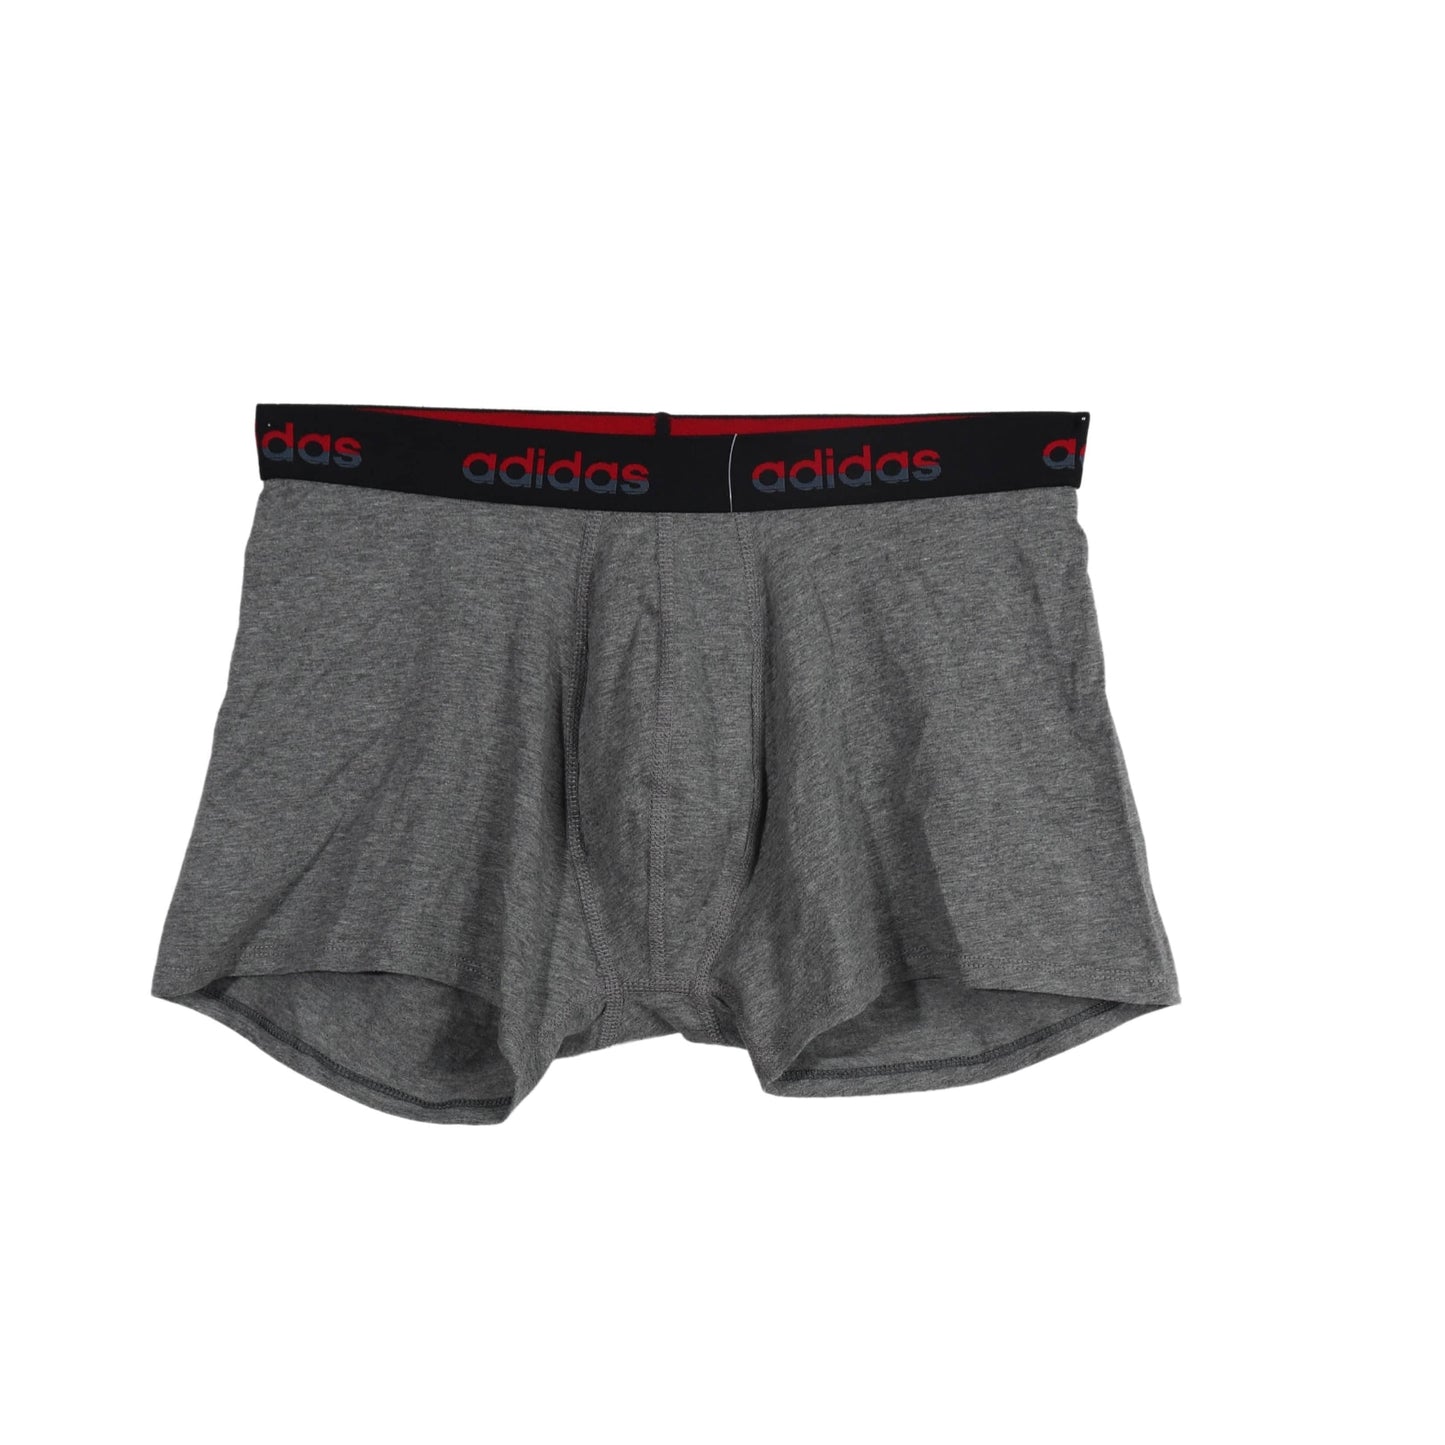 ADIDAS Mens Underwear ADIDAS - Casual Boxer